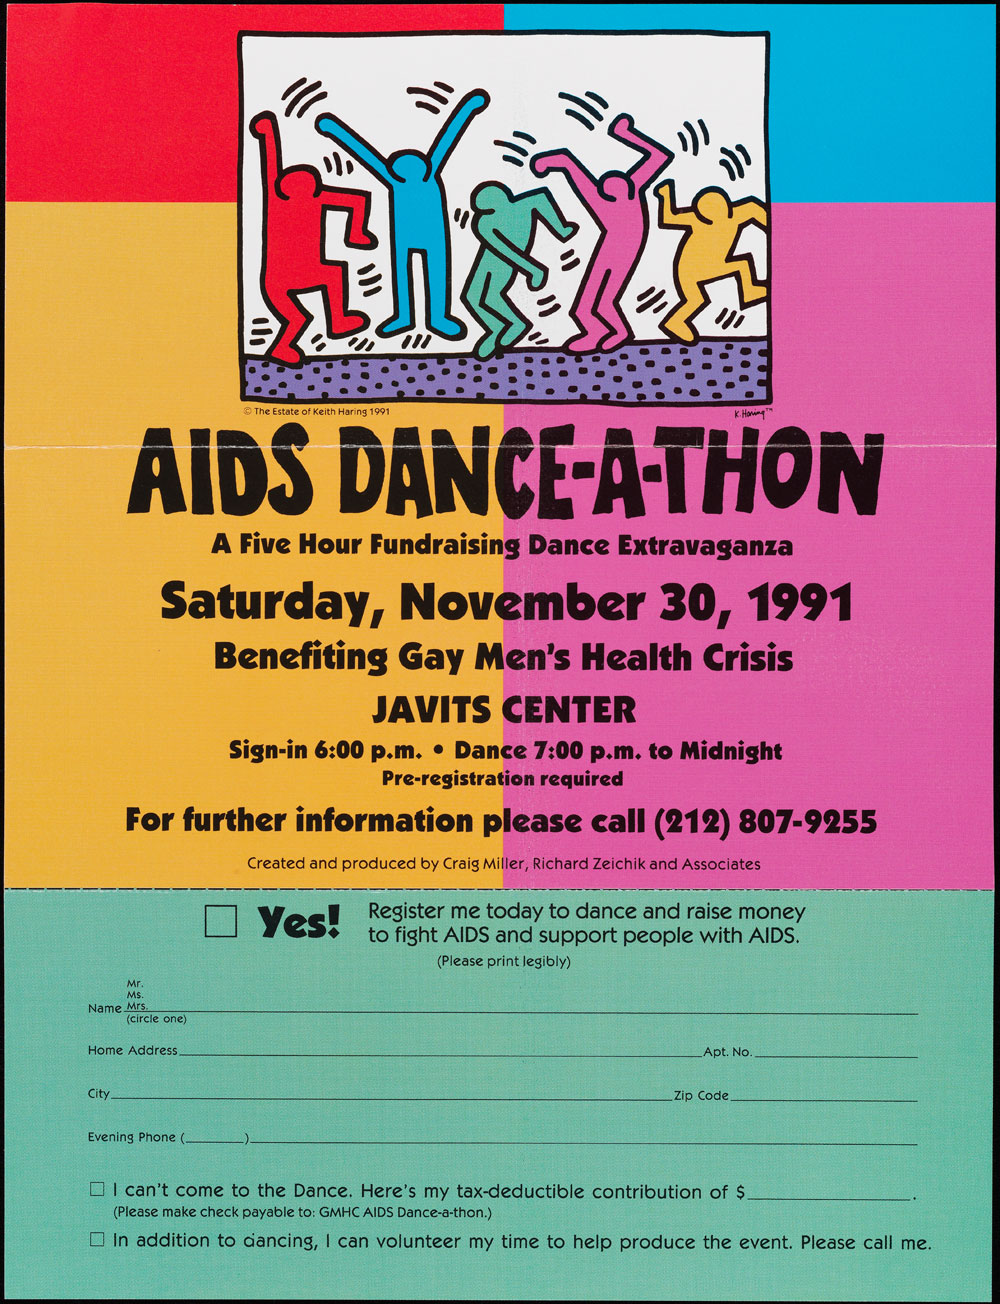 1991 년 XNUMX 월 "AIDS Dance-A-thon"광고 전단지. 포스터는 밝은 색상이며 등록 양식이 포함되어 있습니다.